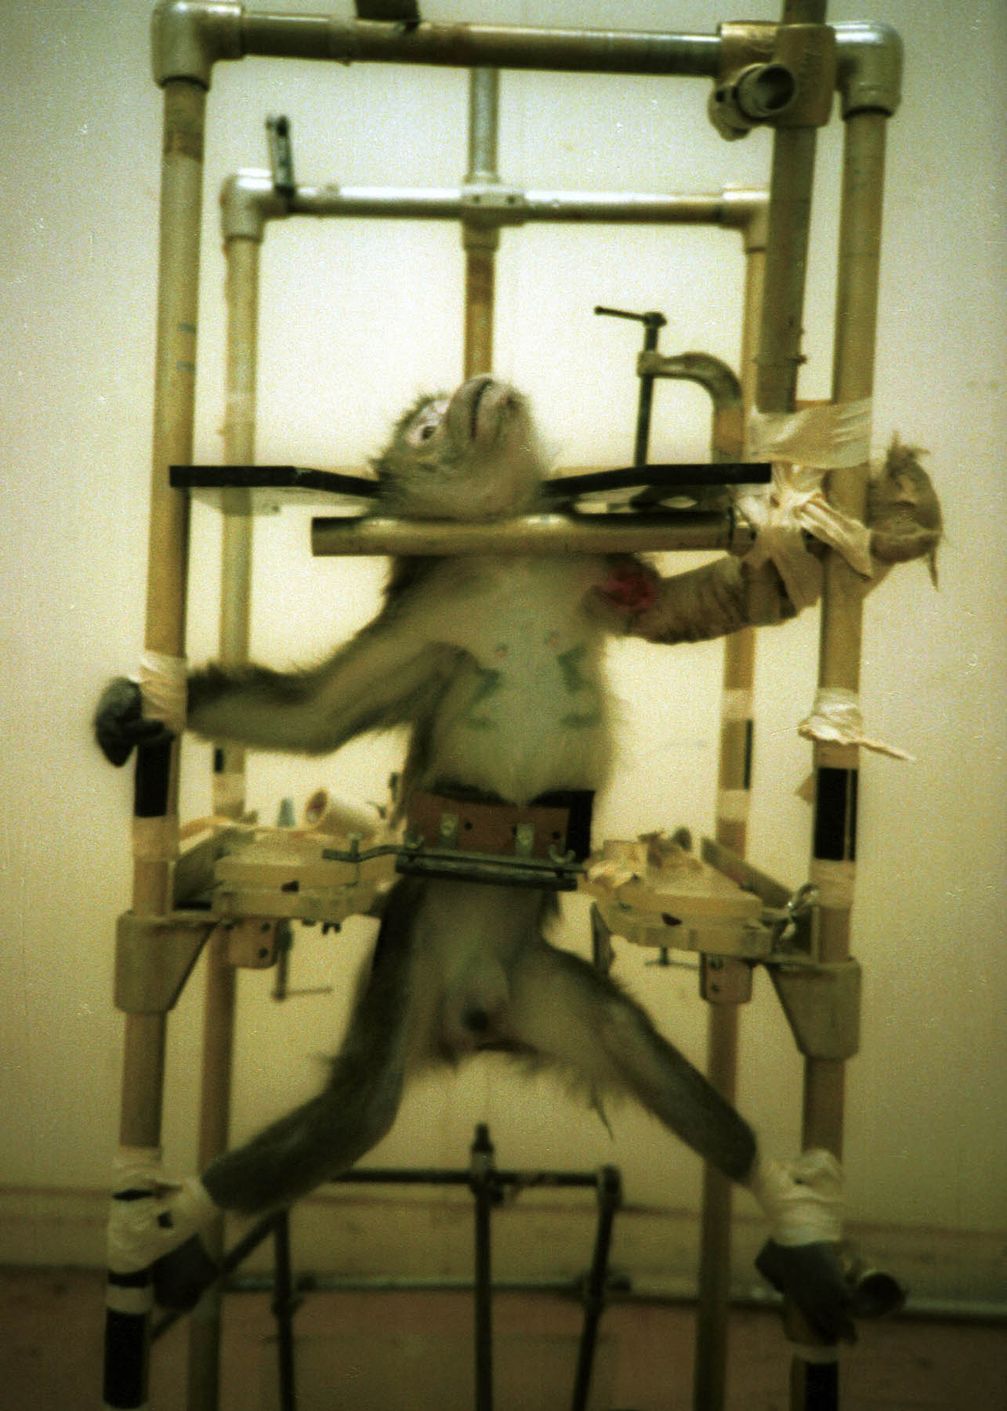 Die Veröffentlichung dieses Fotos durch PETA im Jahr 1981 löste die öffentliche Kontroverse um die Silver Spring-Monkeys aus und wurde in der Tierversuchsdebatte der USA zu einer Ikone.[18]